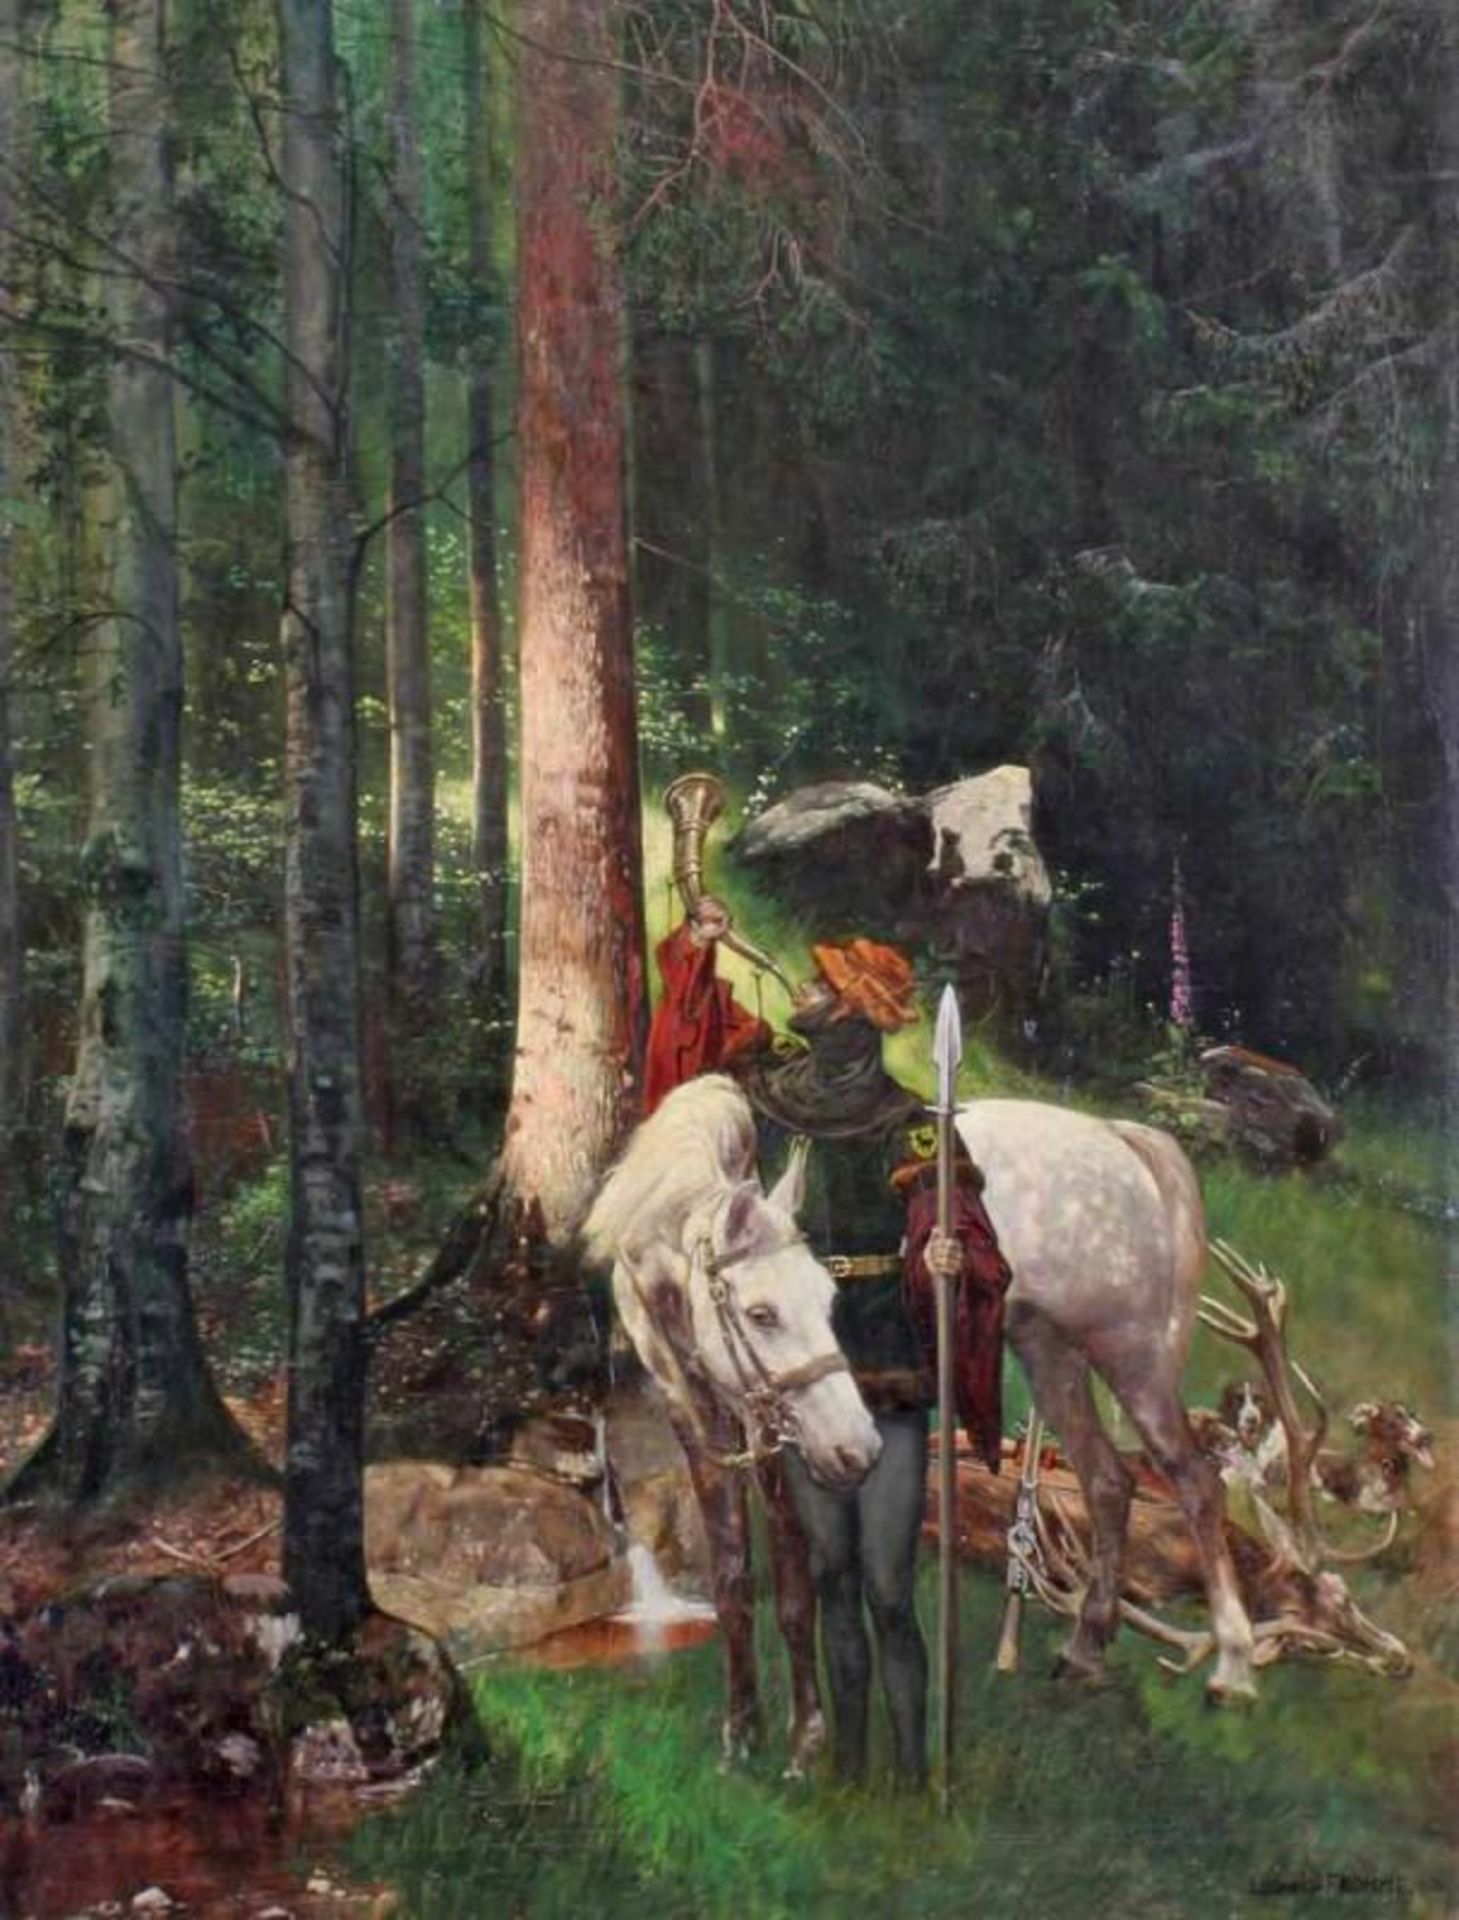 Fromme, Ludwig (19./20. Jh.), "Mittelalterlicher Edelmann nach der Jagd", Öl auf Leinwand,